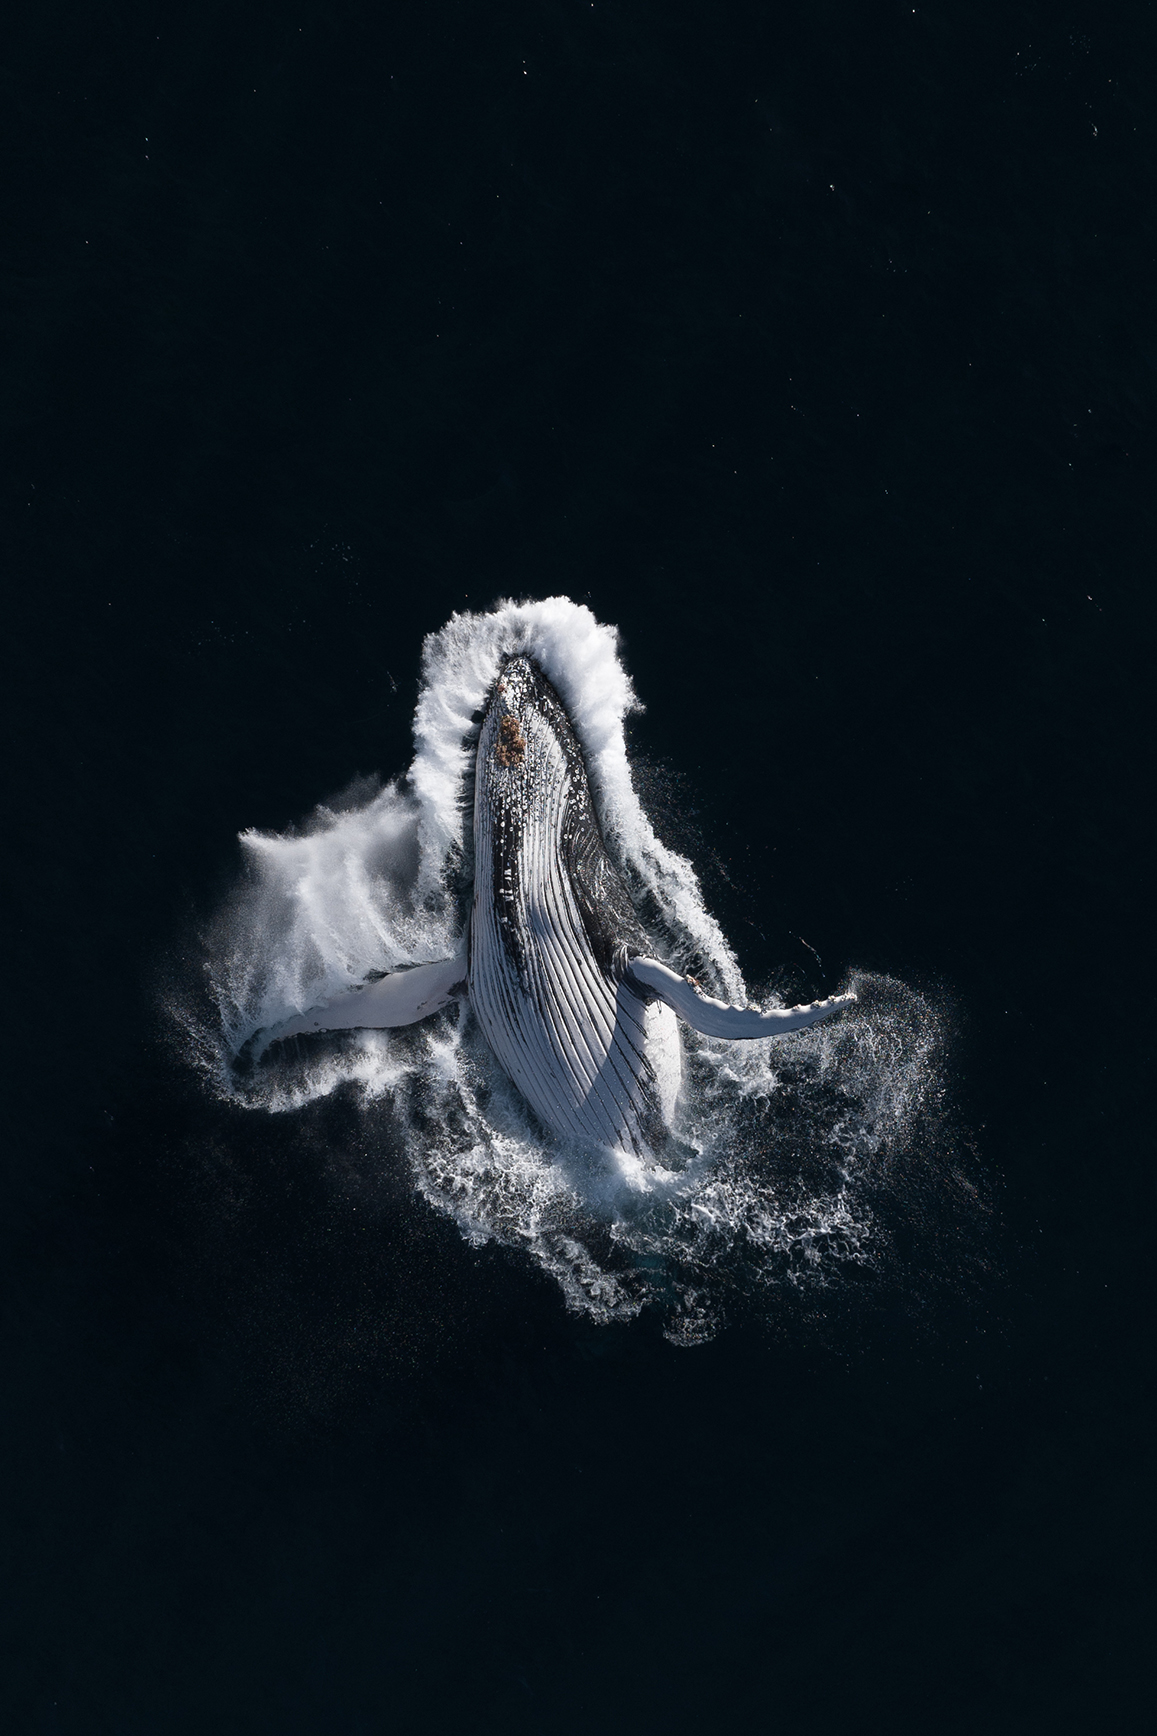 Μια φάλαινα προσγειώνεται με χάρη στην πλάτη της, έχοντας εκτινάξει το τεράστιο σώμα της από τα βάθη του Ειρηνικού Ωκεανού, κοντά στην Αυστραλία